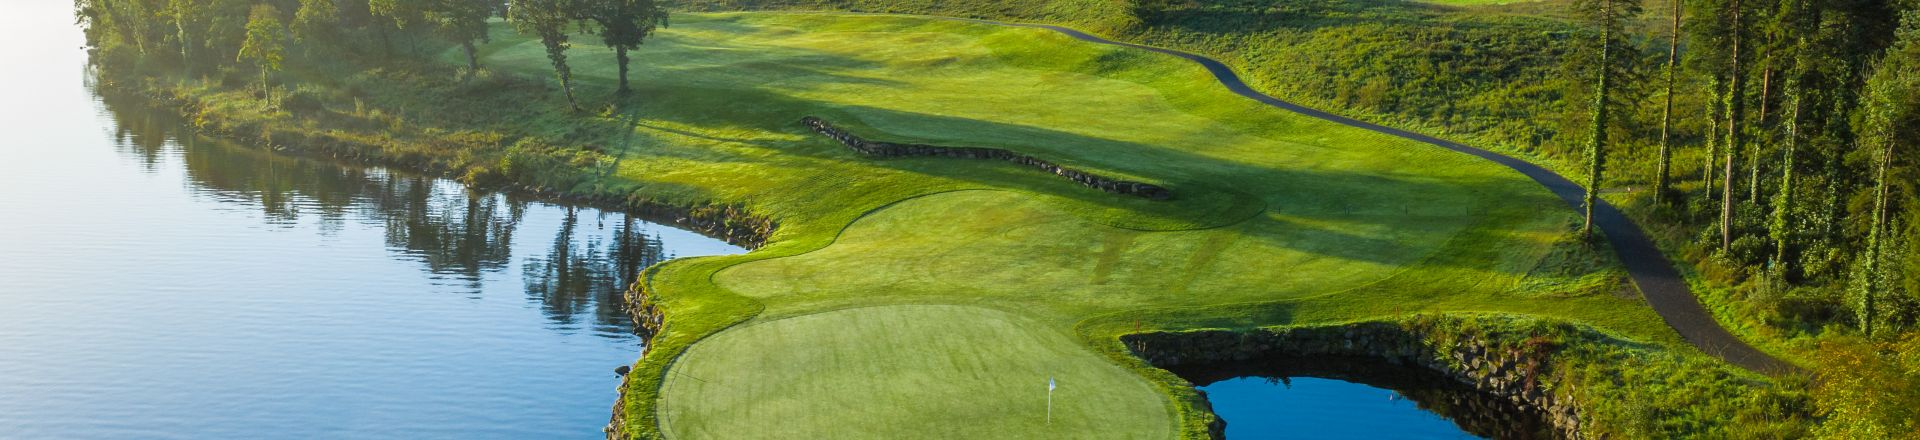 Lough Erne Golf Course